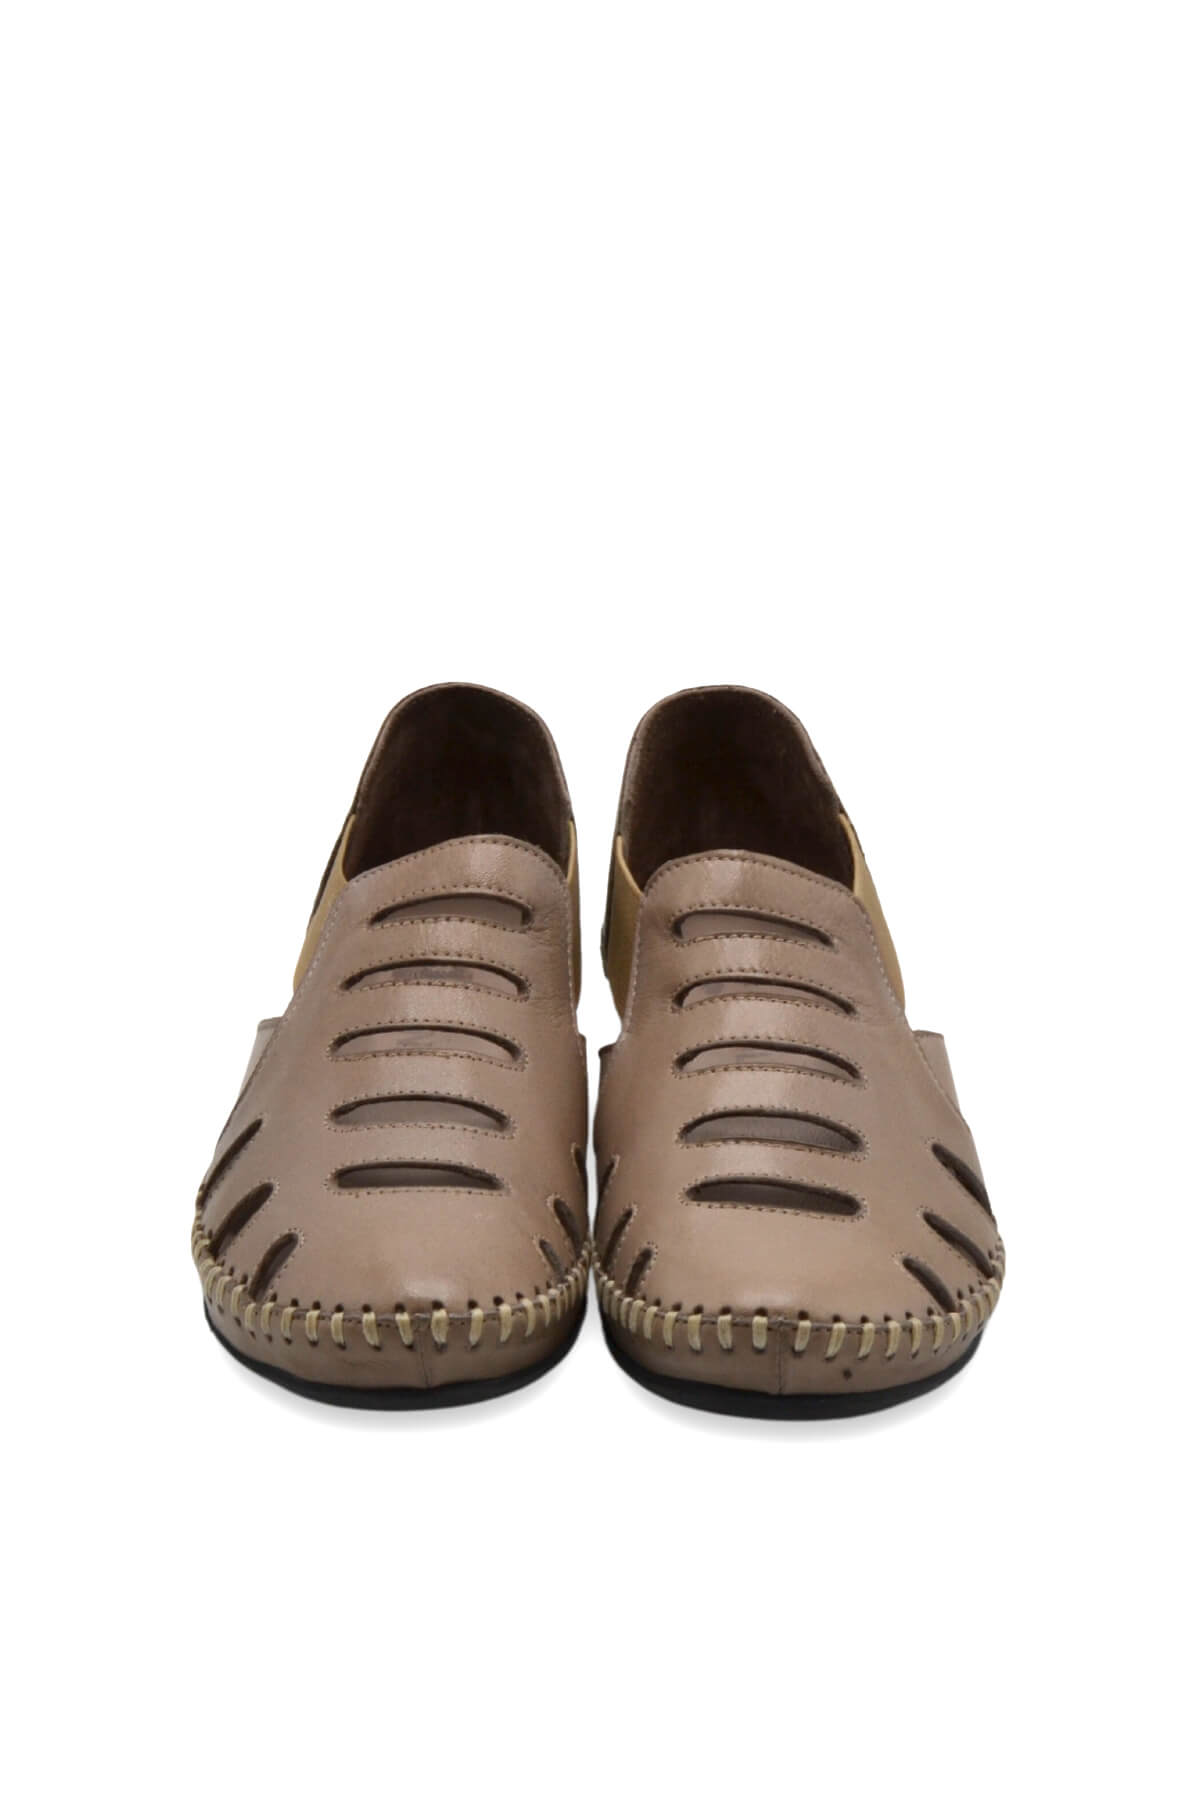 Kadın Comfort Deri Sandalet Vizon 18791395